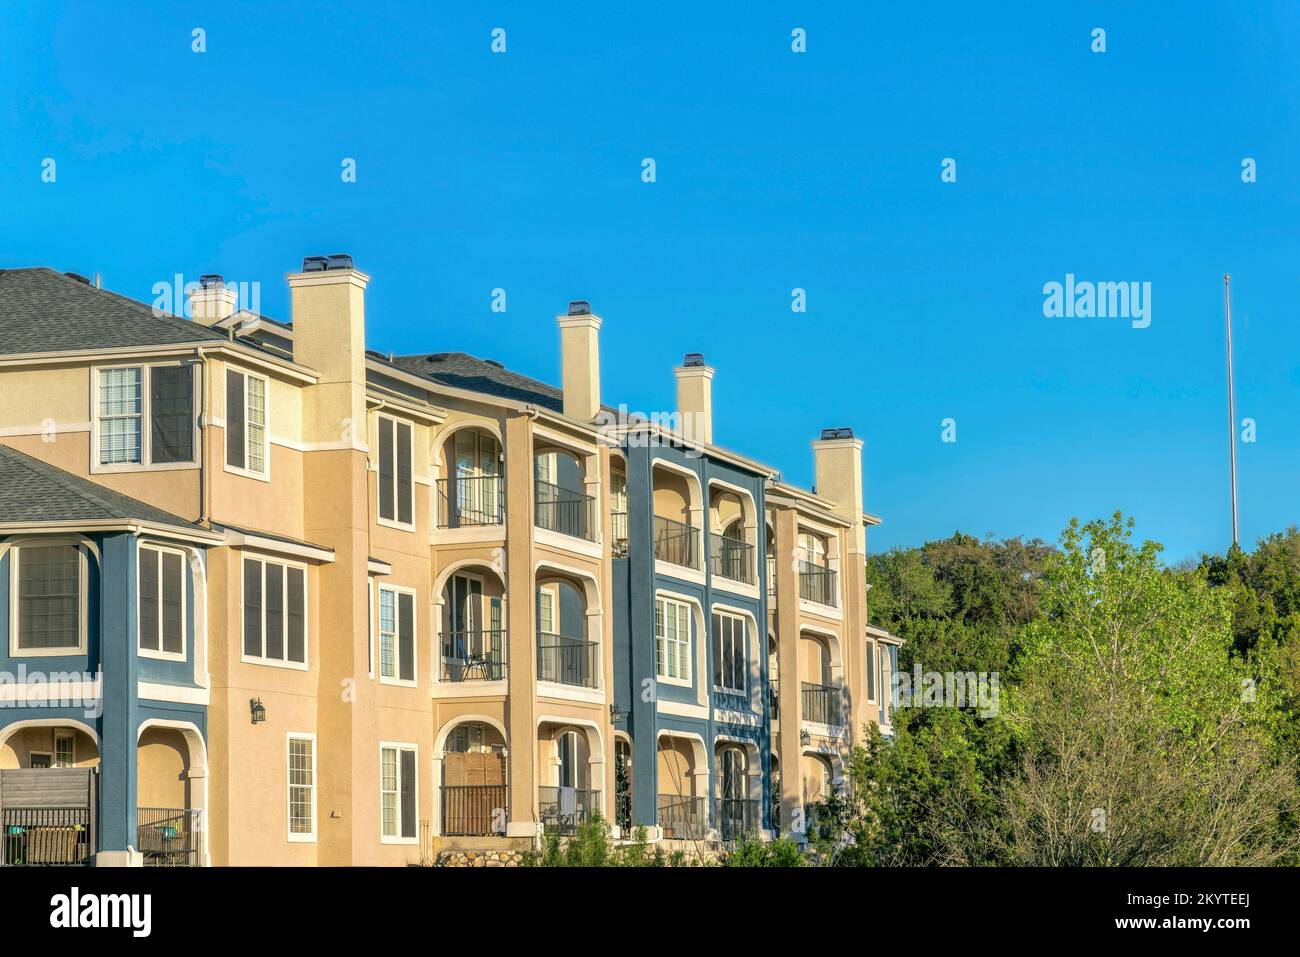 Austin, Texas - Apartmentgebäude in der Nähe des Lake Austin mit blauer und beigefarbener Fassade. Außenansicht eines Wohngebäudes mit Balkonen und Blick auf die Bäume Stockfoto